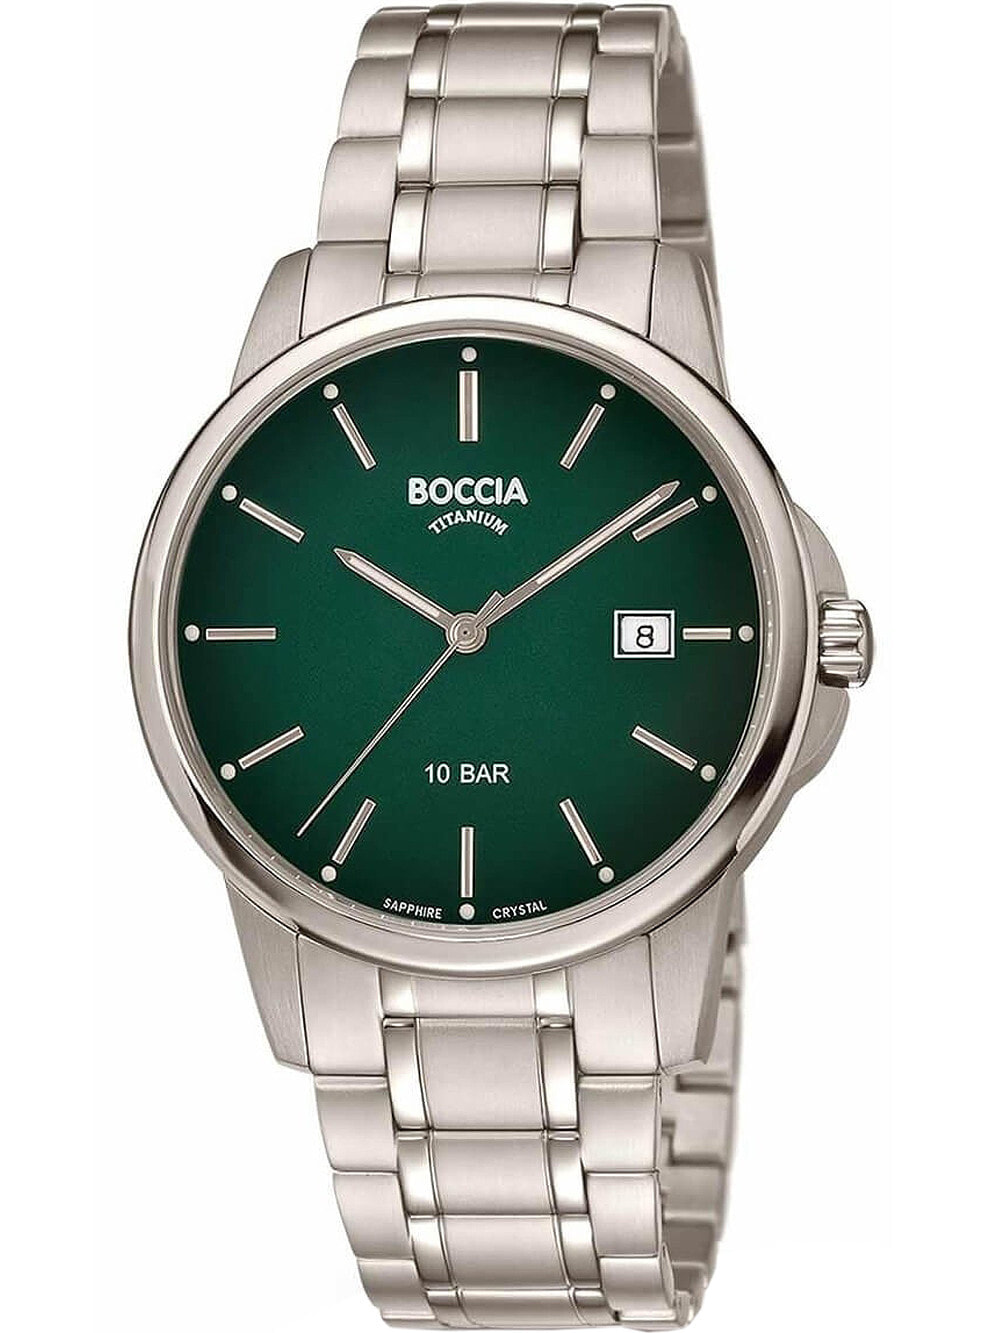 Мужские наручные часы с серебряным браслетом Boccia 3633-05 mens watch titanium 40mm 10ATM